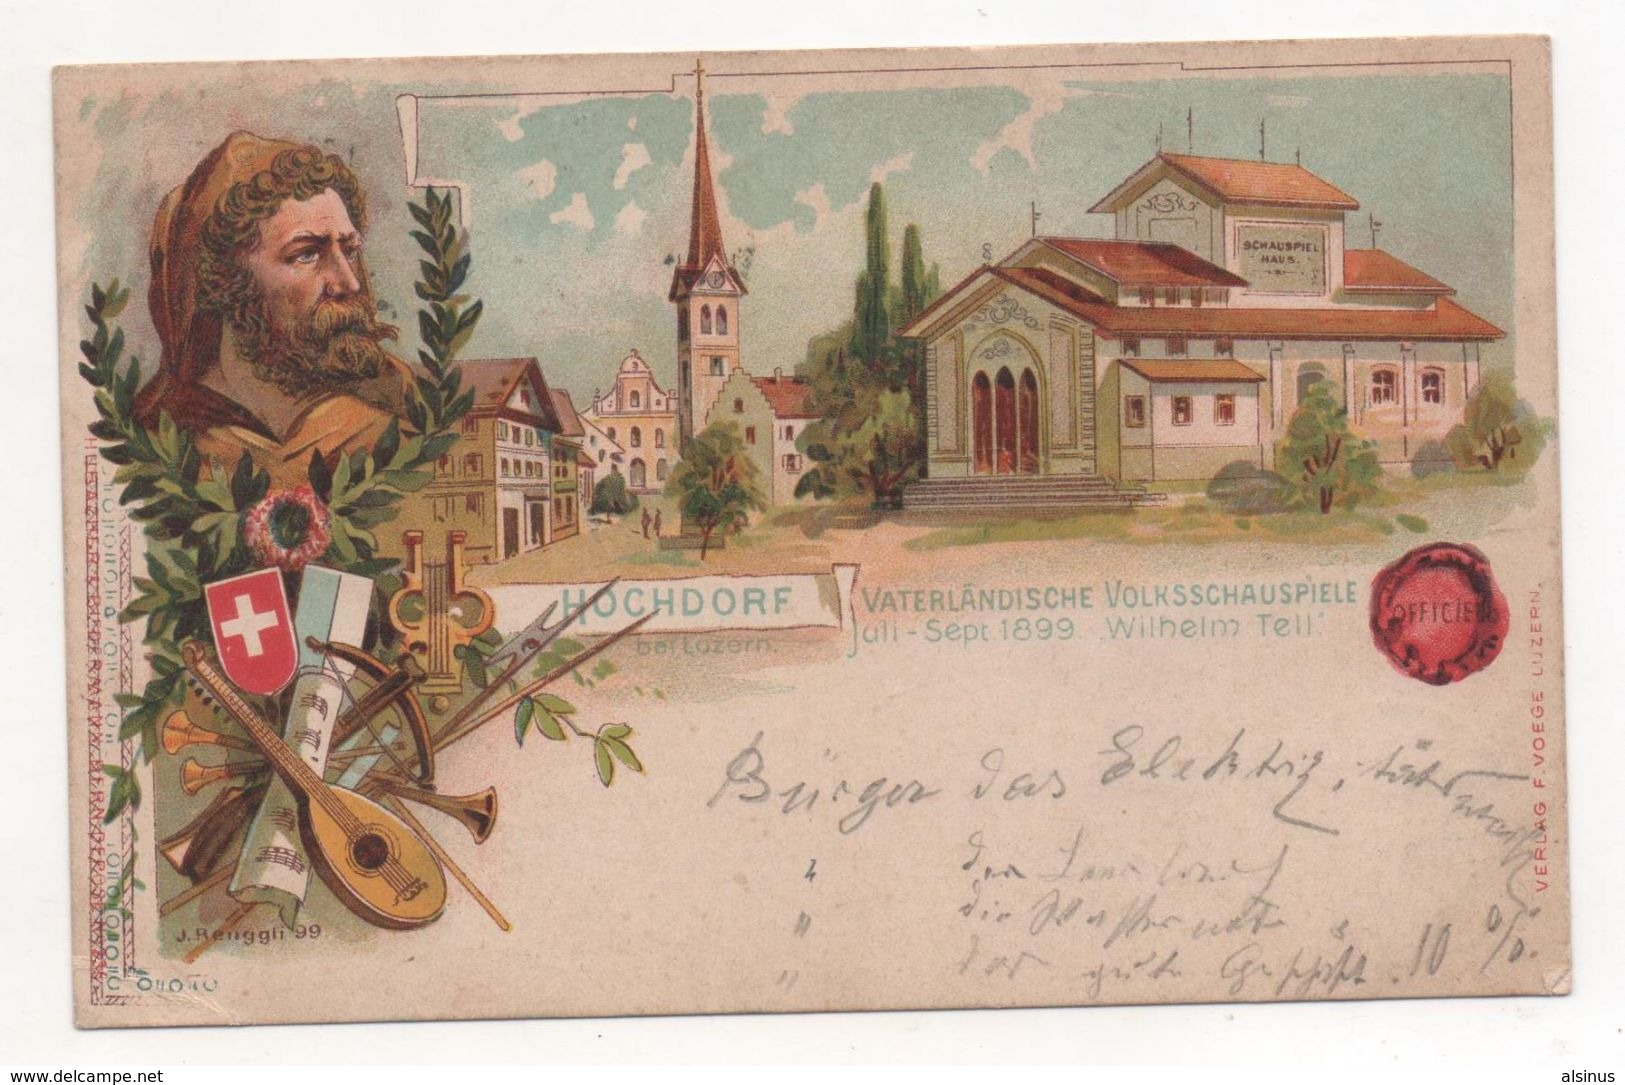 SUISSE - HOCHDORF - VATER LÄNDISCHE VOLKSSCHAUSPIELE - JULI-SEPT. 1899 - WILHELM TELL - Hochdorf